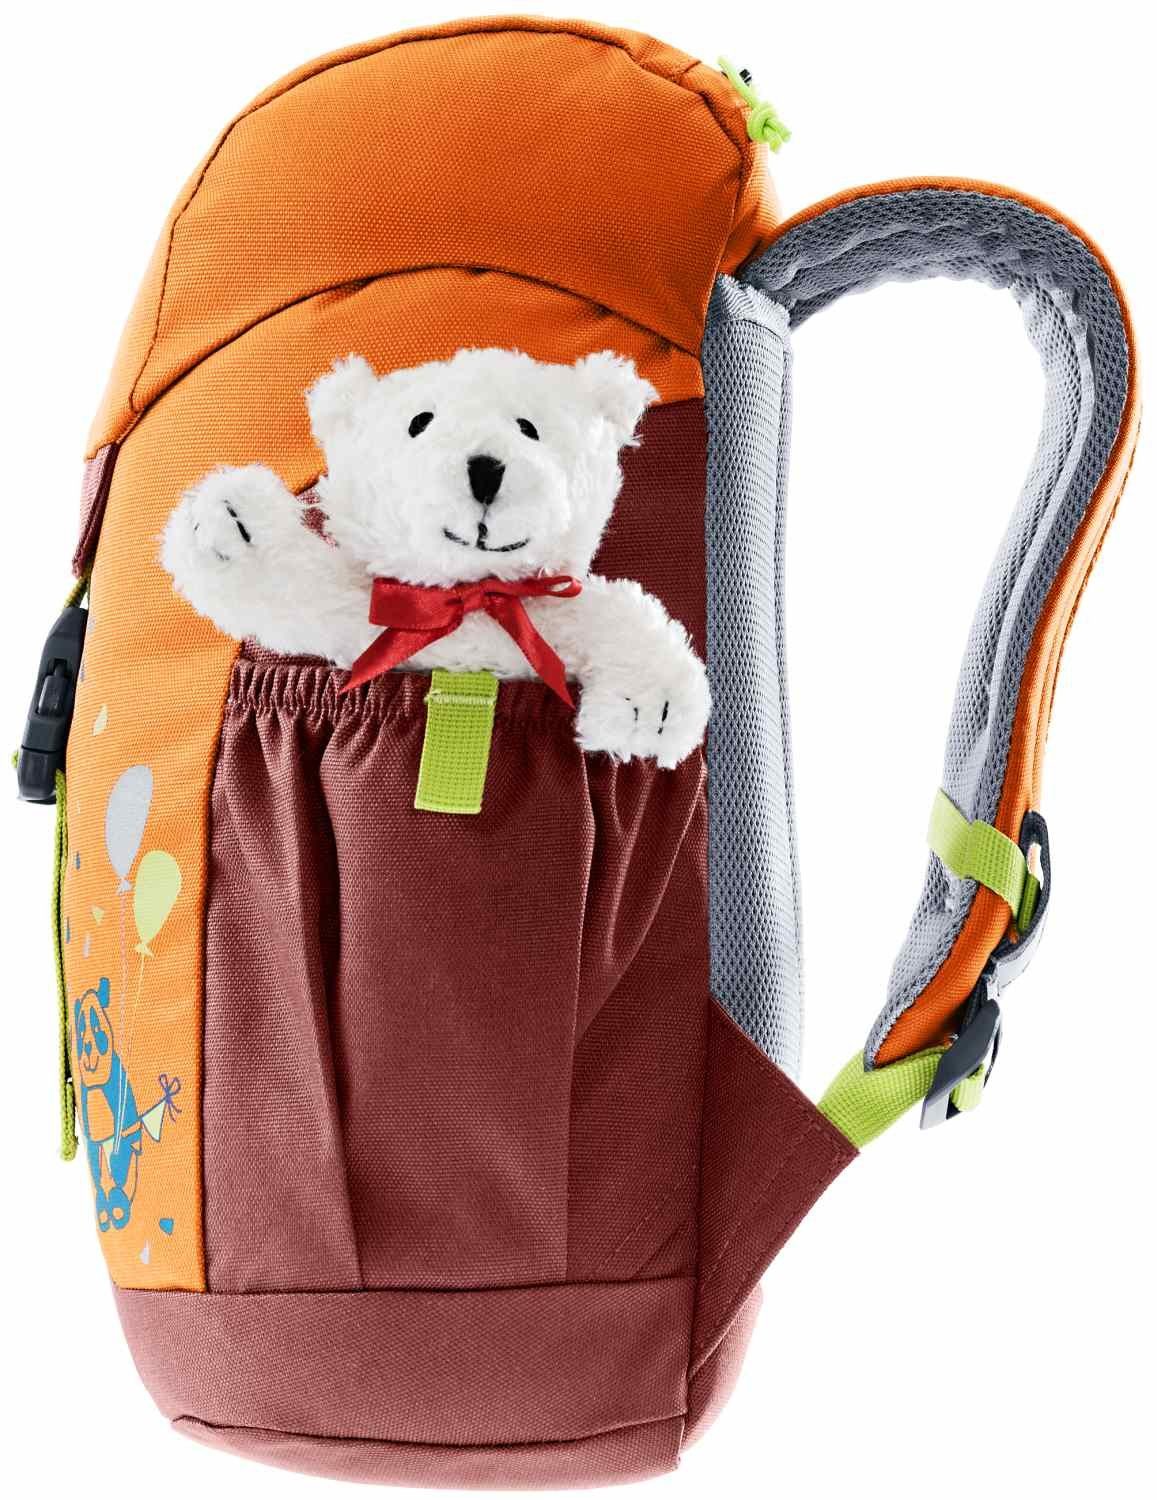 Teddybär Schmusebär Kinderrucksack deuter mandarine-redwood Babystiefel mit deuter